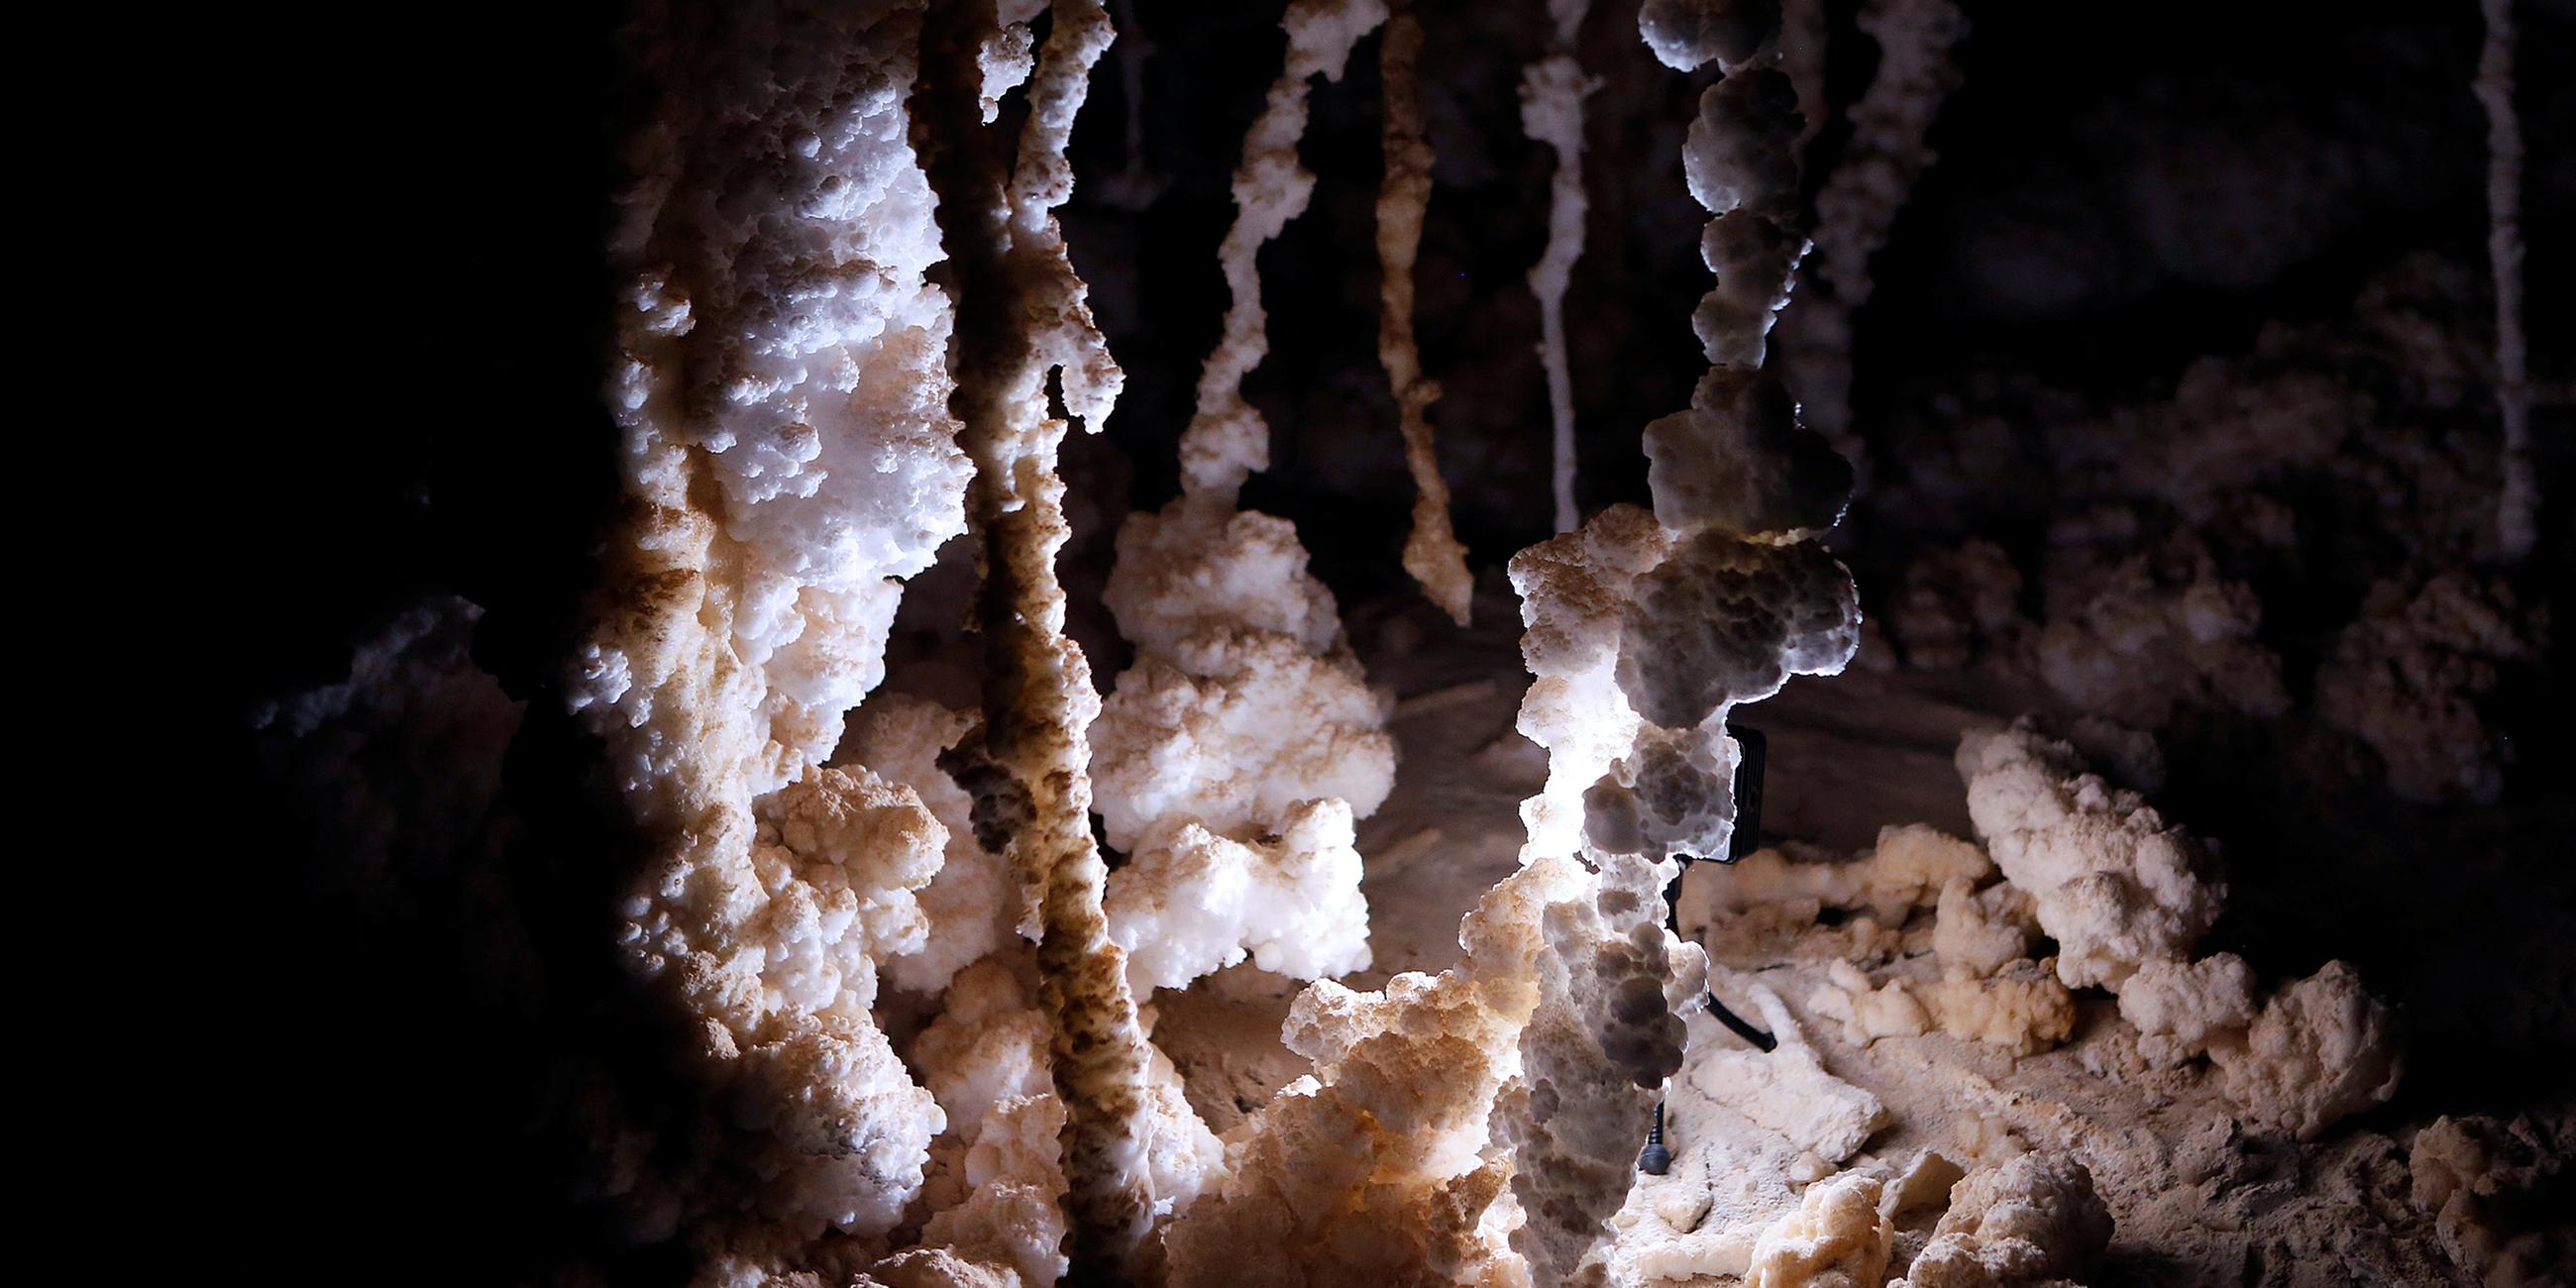 Salzstrukturen in der Malcham-Höhle, Israel, aufgenommen am 27.03.2019